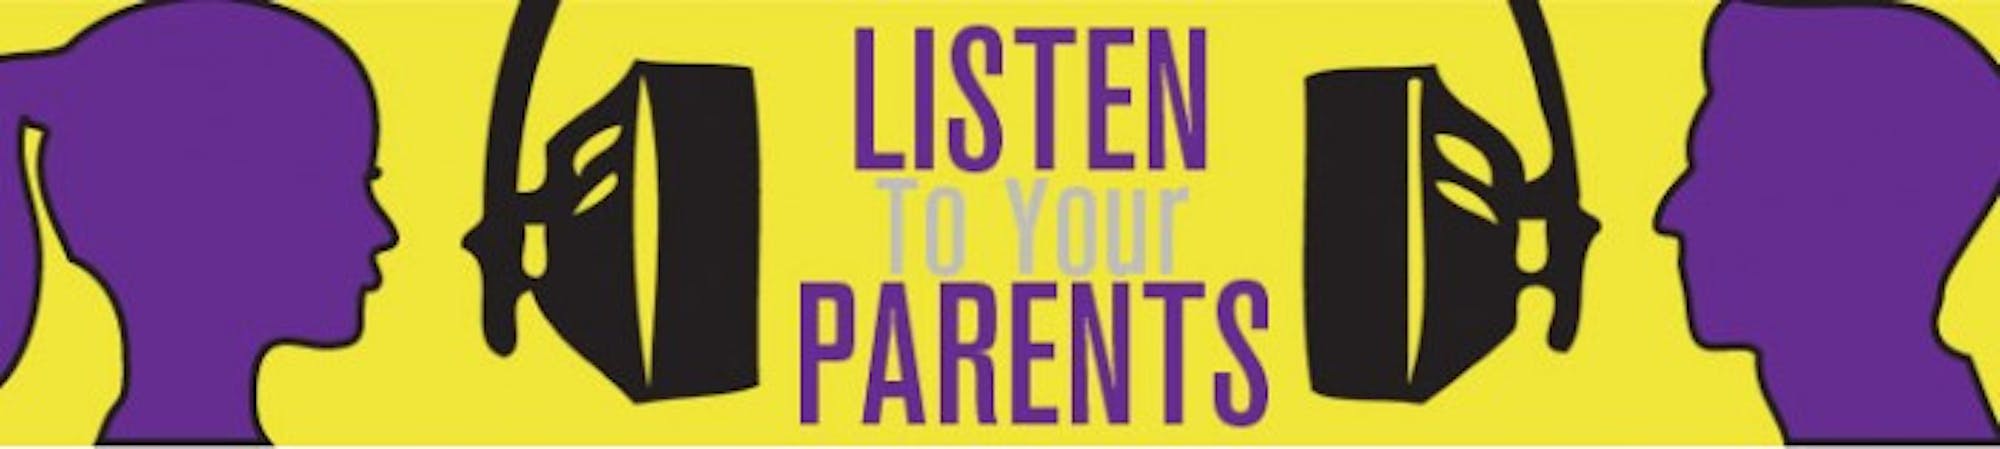 Listen-to-your-parents-web